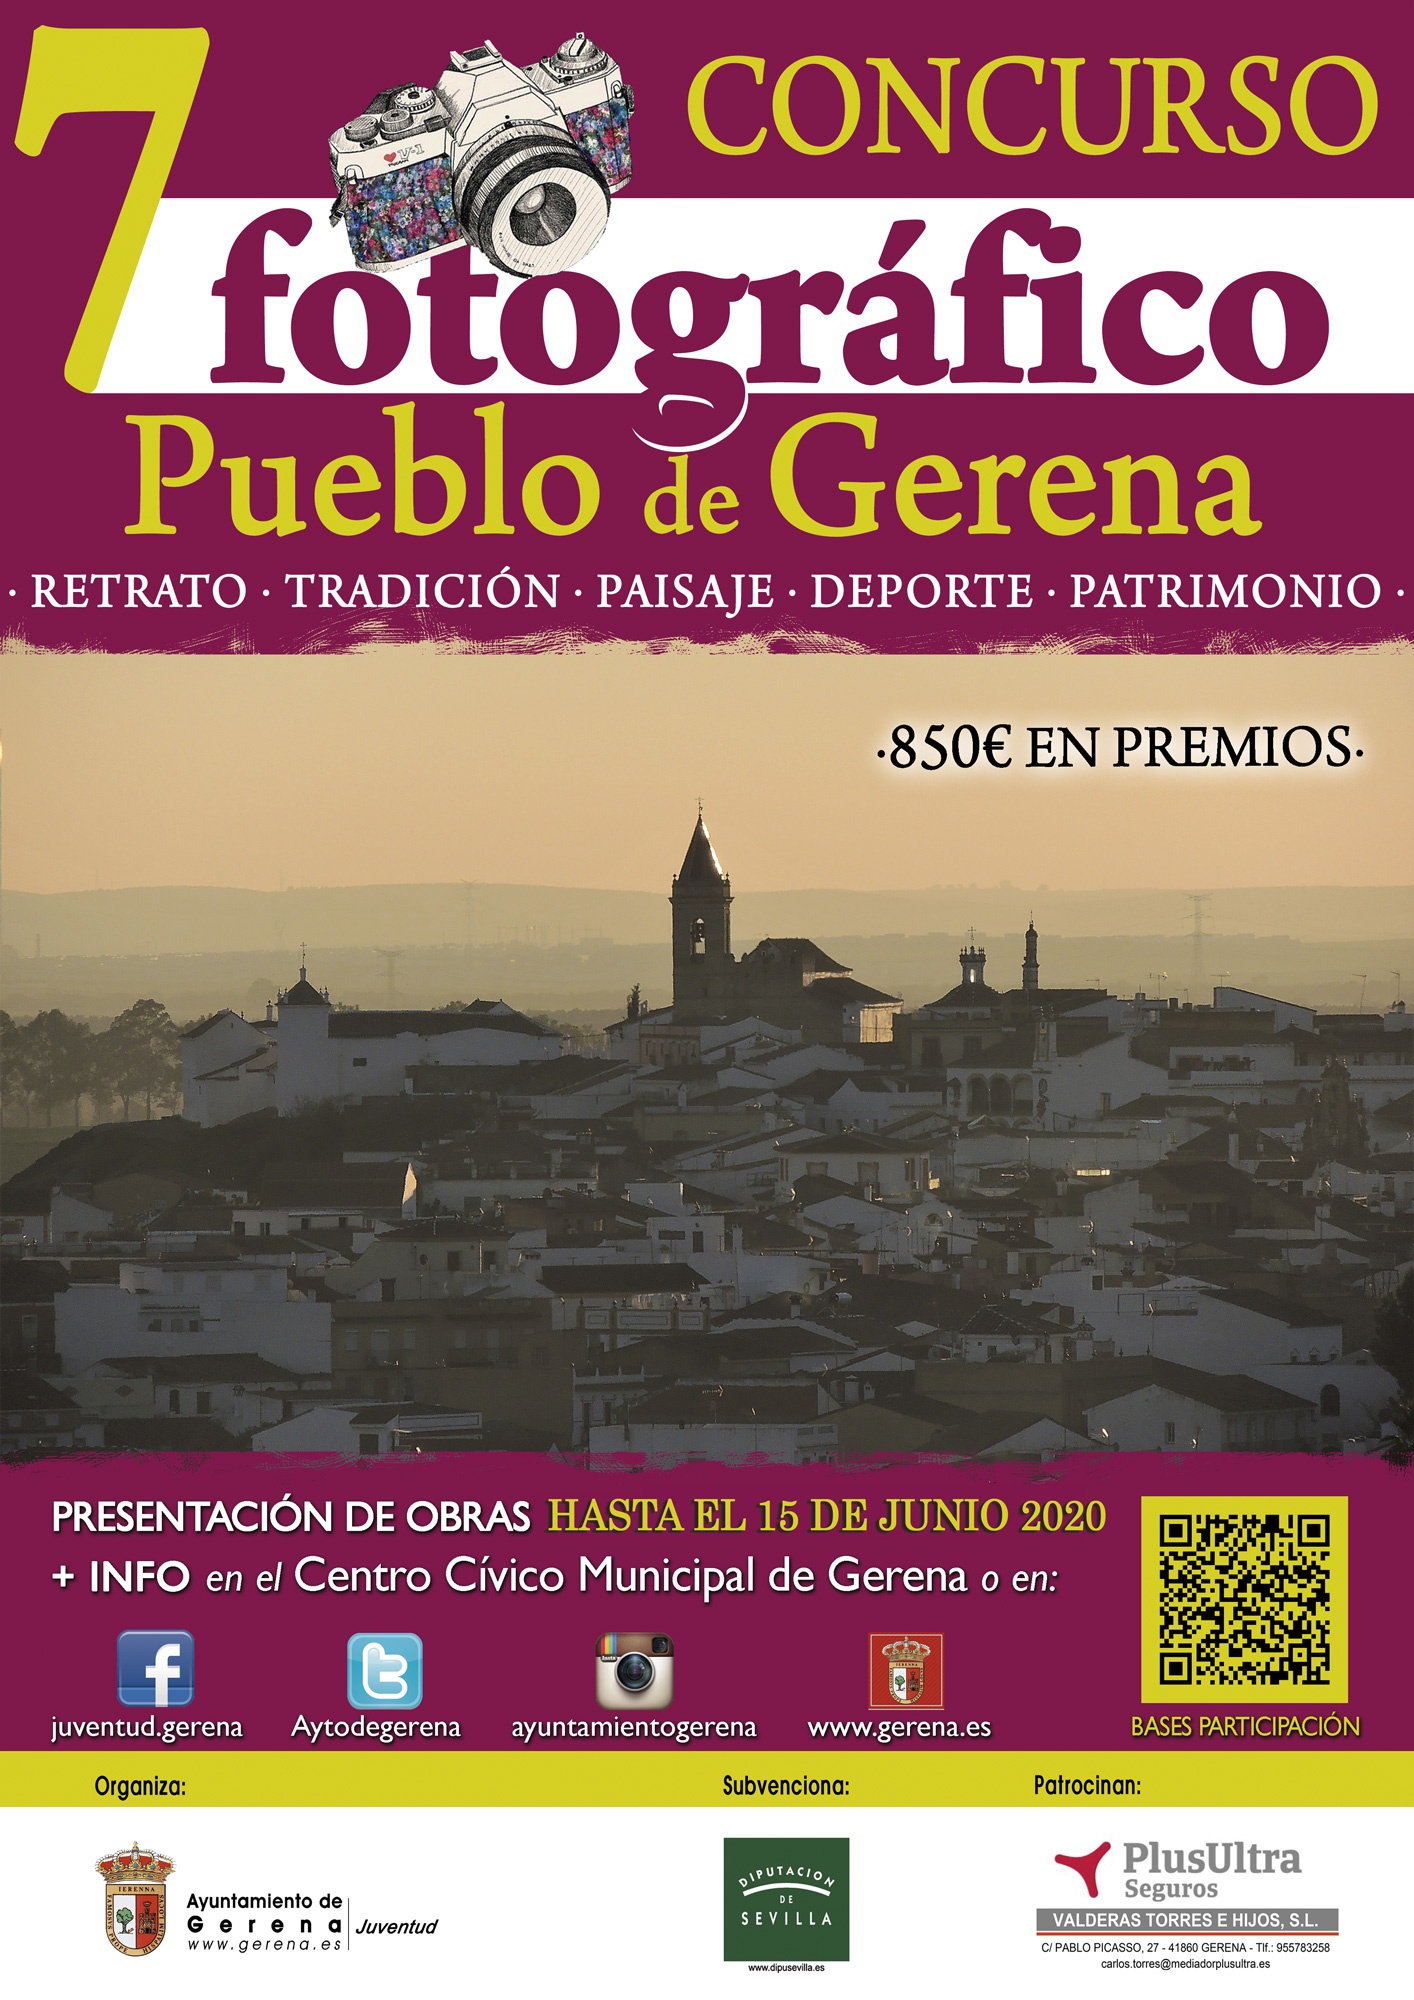 7º Concurso fotográfico Pueblo de Gerena